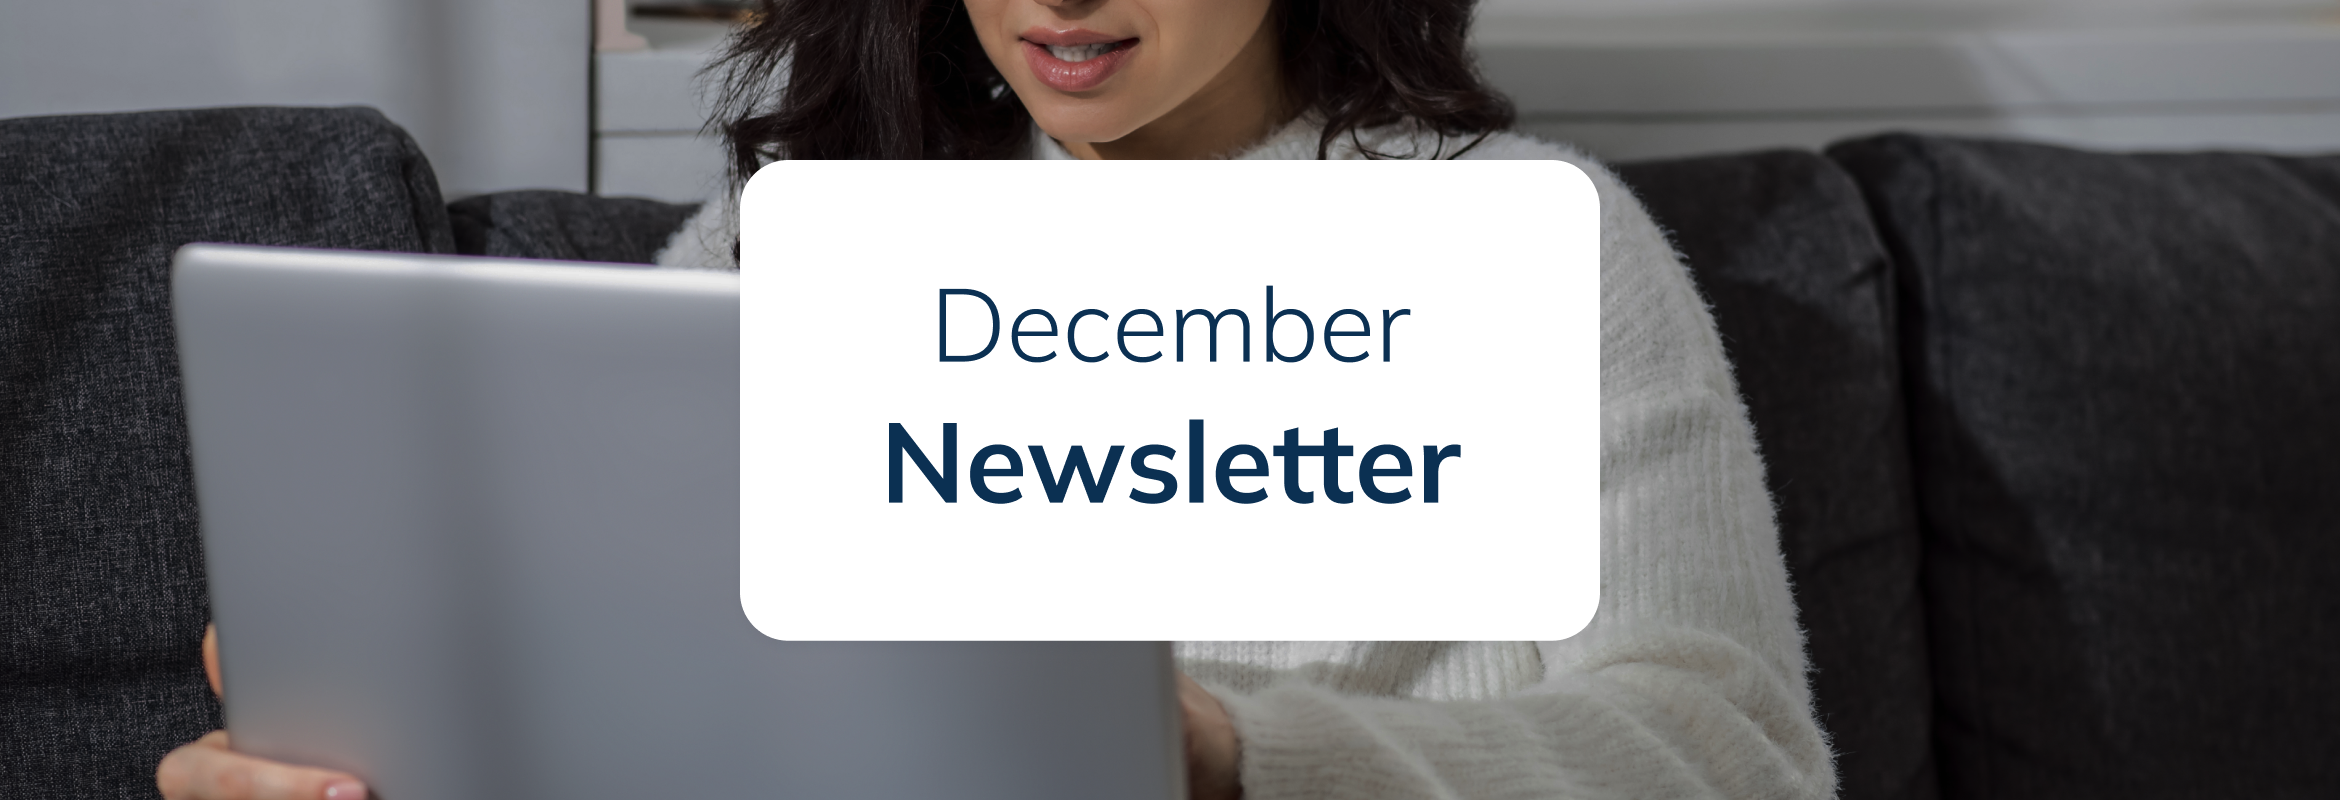 December Newsletter SimplyBook.me